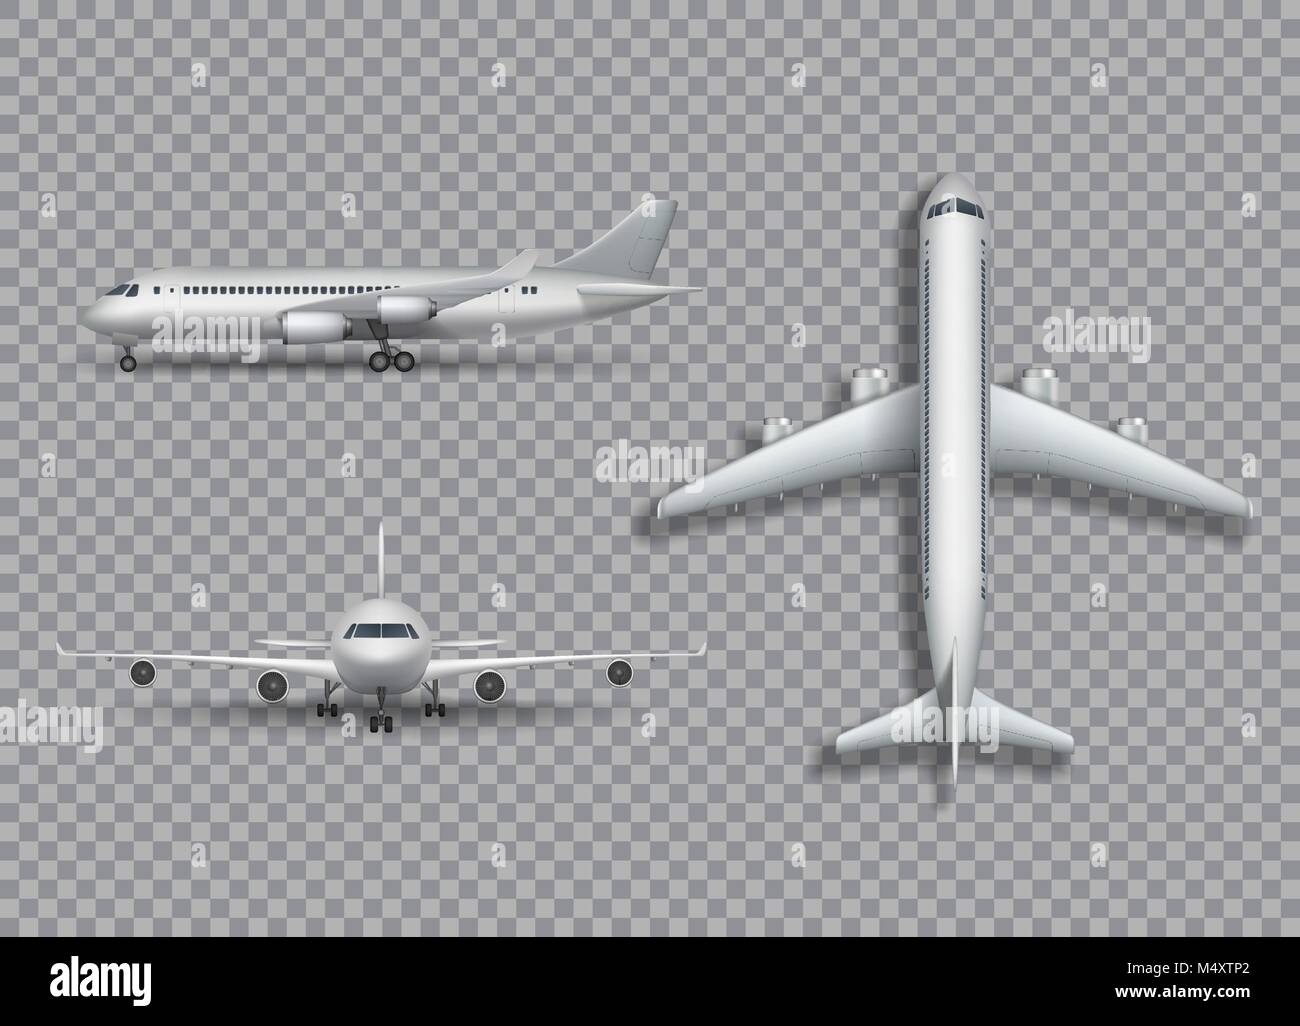 Aeroplano bianco mock up isolato. Aeromobili, aereo di linea realistica 3d immagine su sfondo transtarent. Set di piano di aria dalla parte anteriore, laterale e una vista dall'alto. Illustrazione Vettoriale. Illustrazione Vettoriale